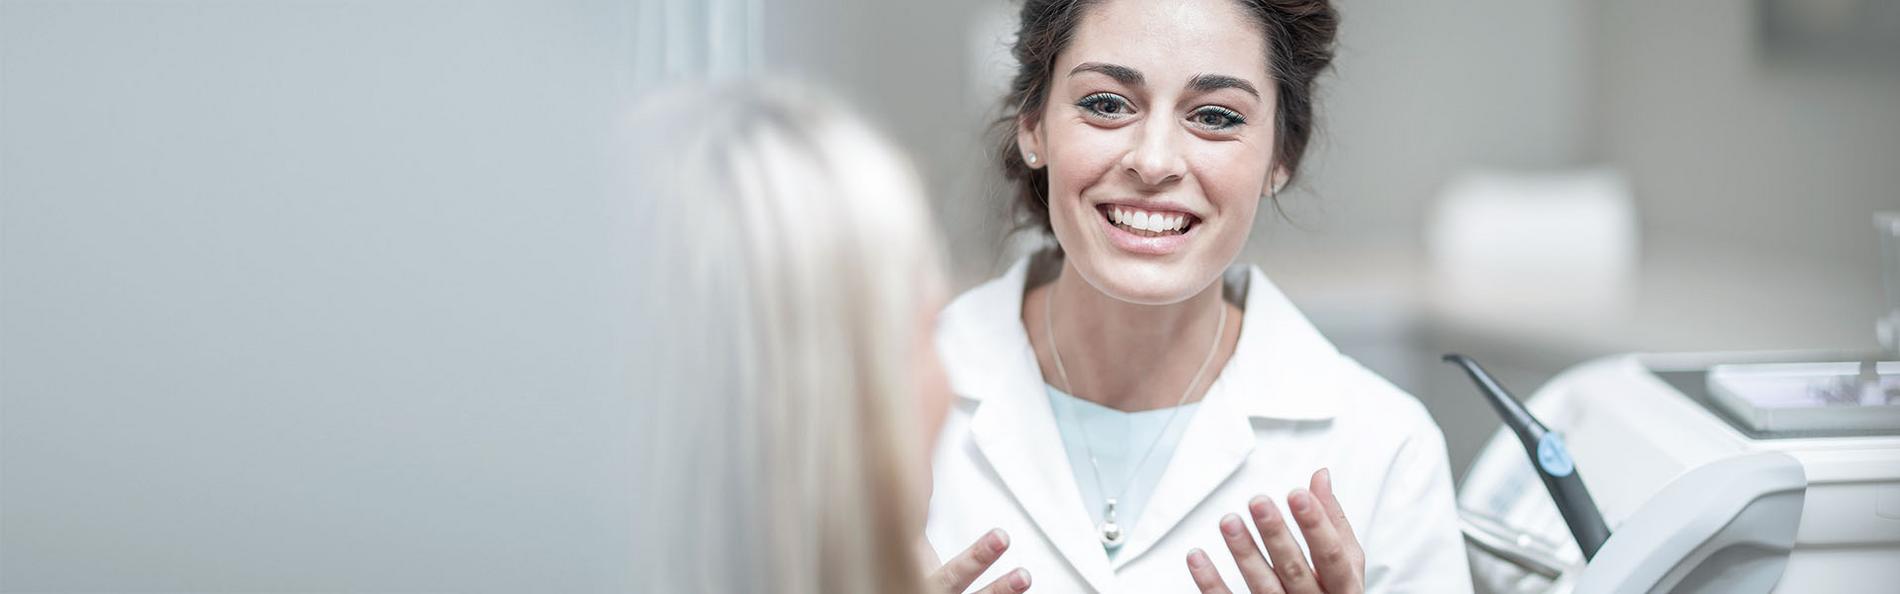 Zahnärztin lächelt ihre Patientin gegenüber an